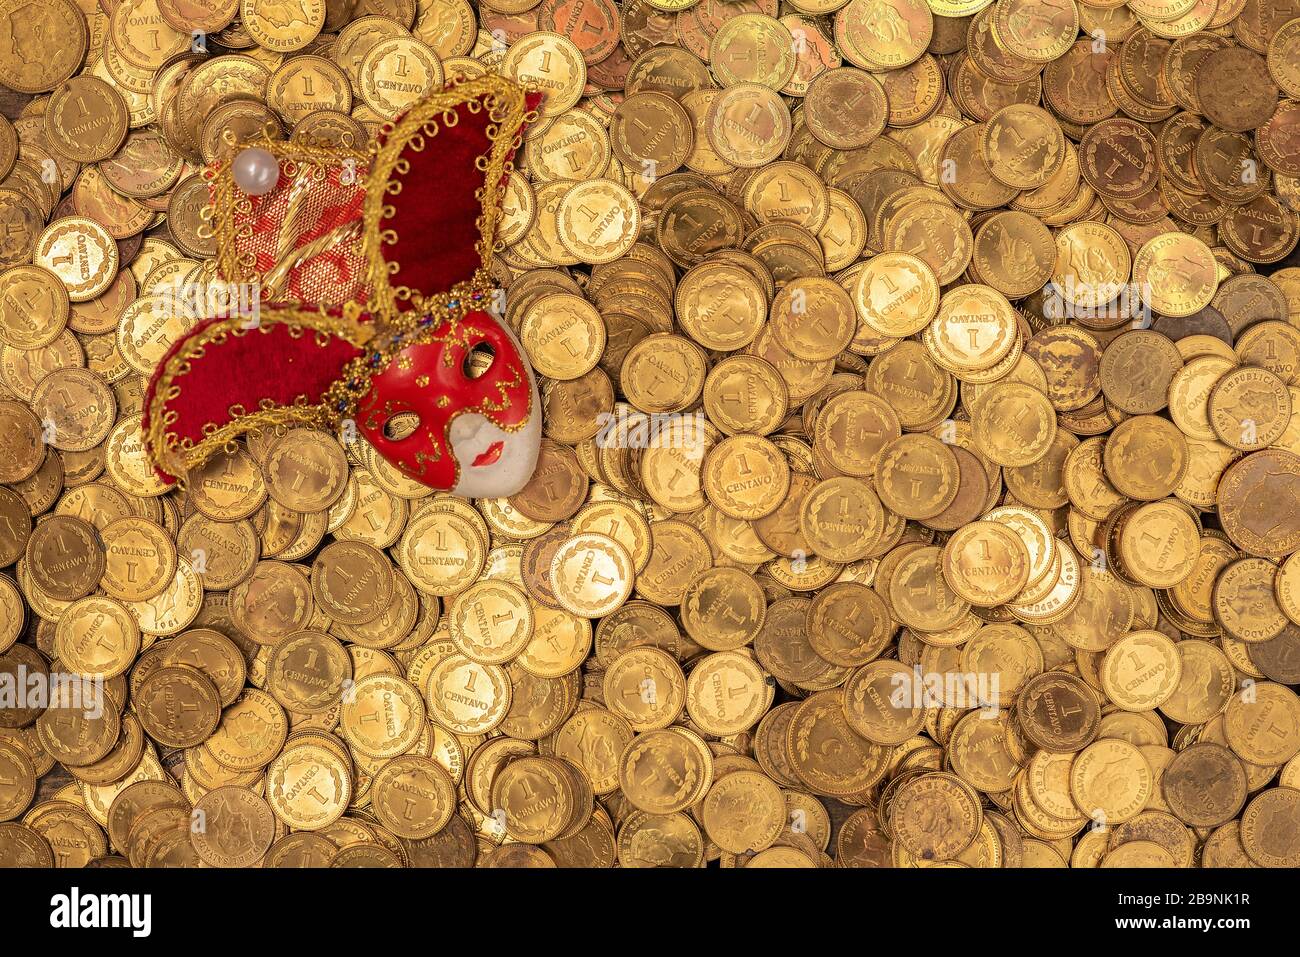 Pila de pequeñas monedas de oro con máscara veneciana Foto de stock